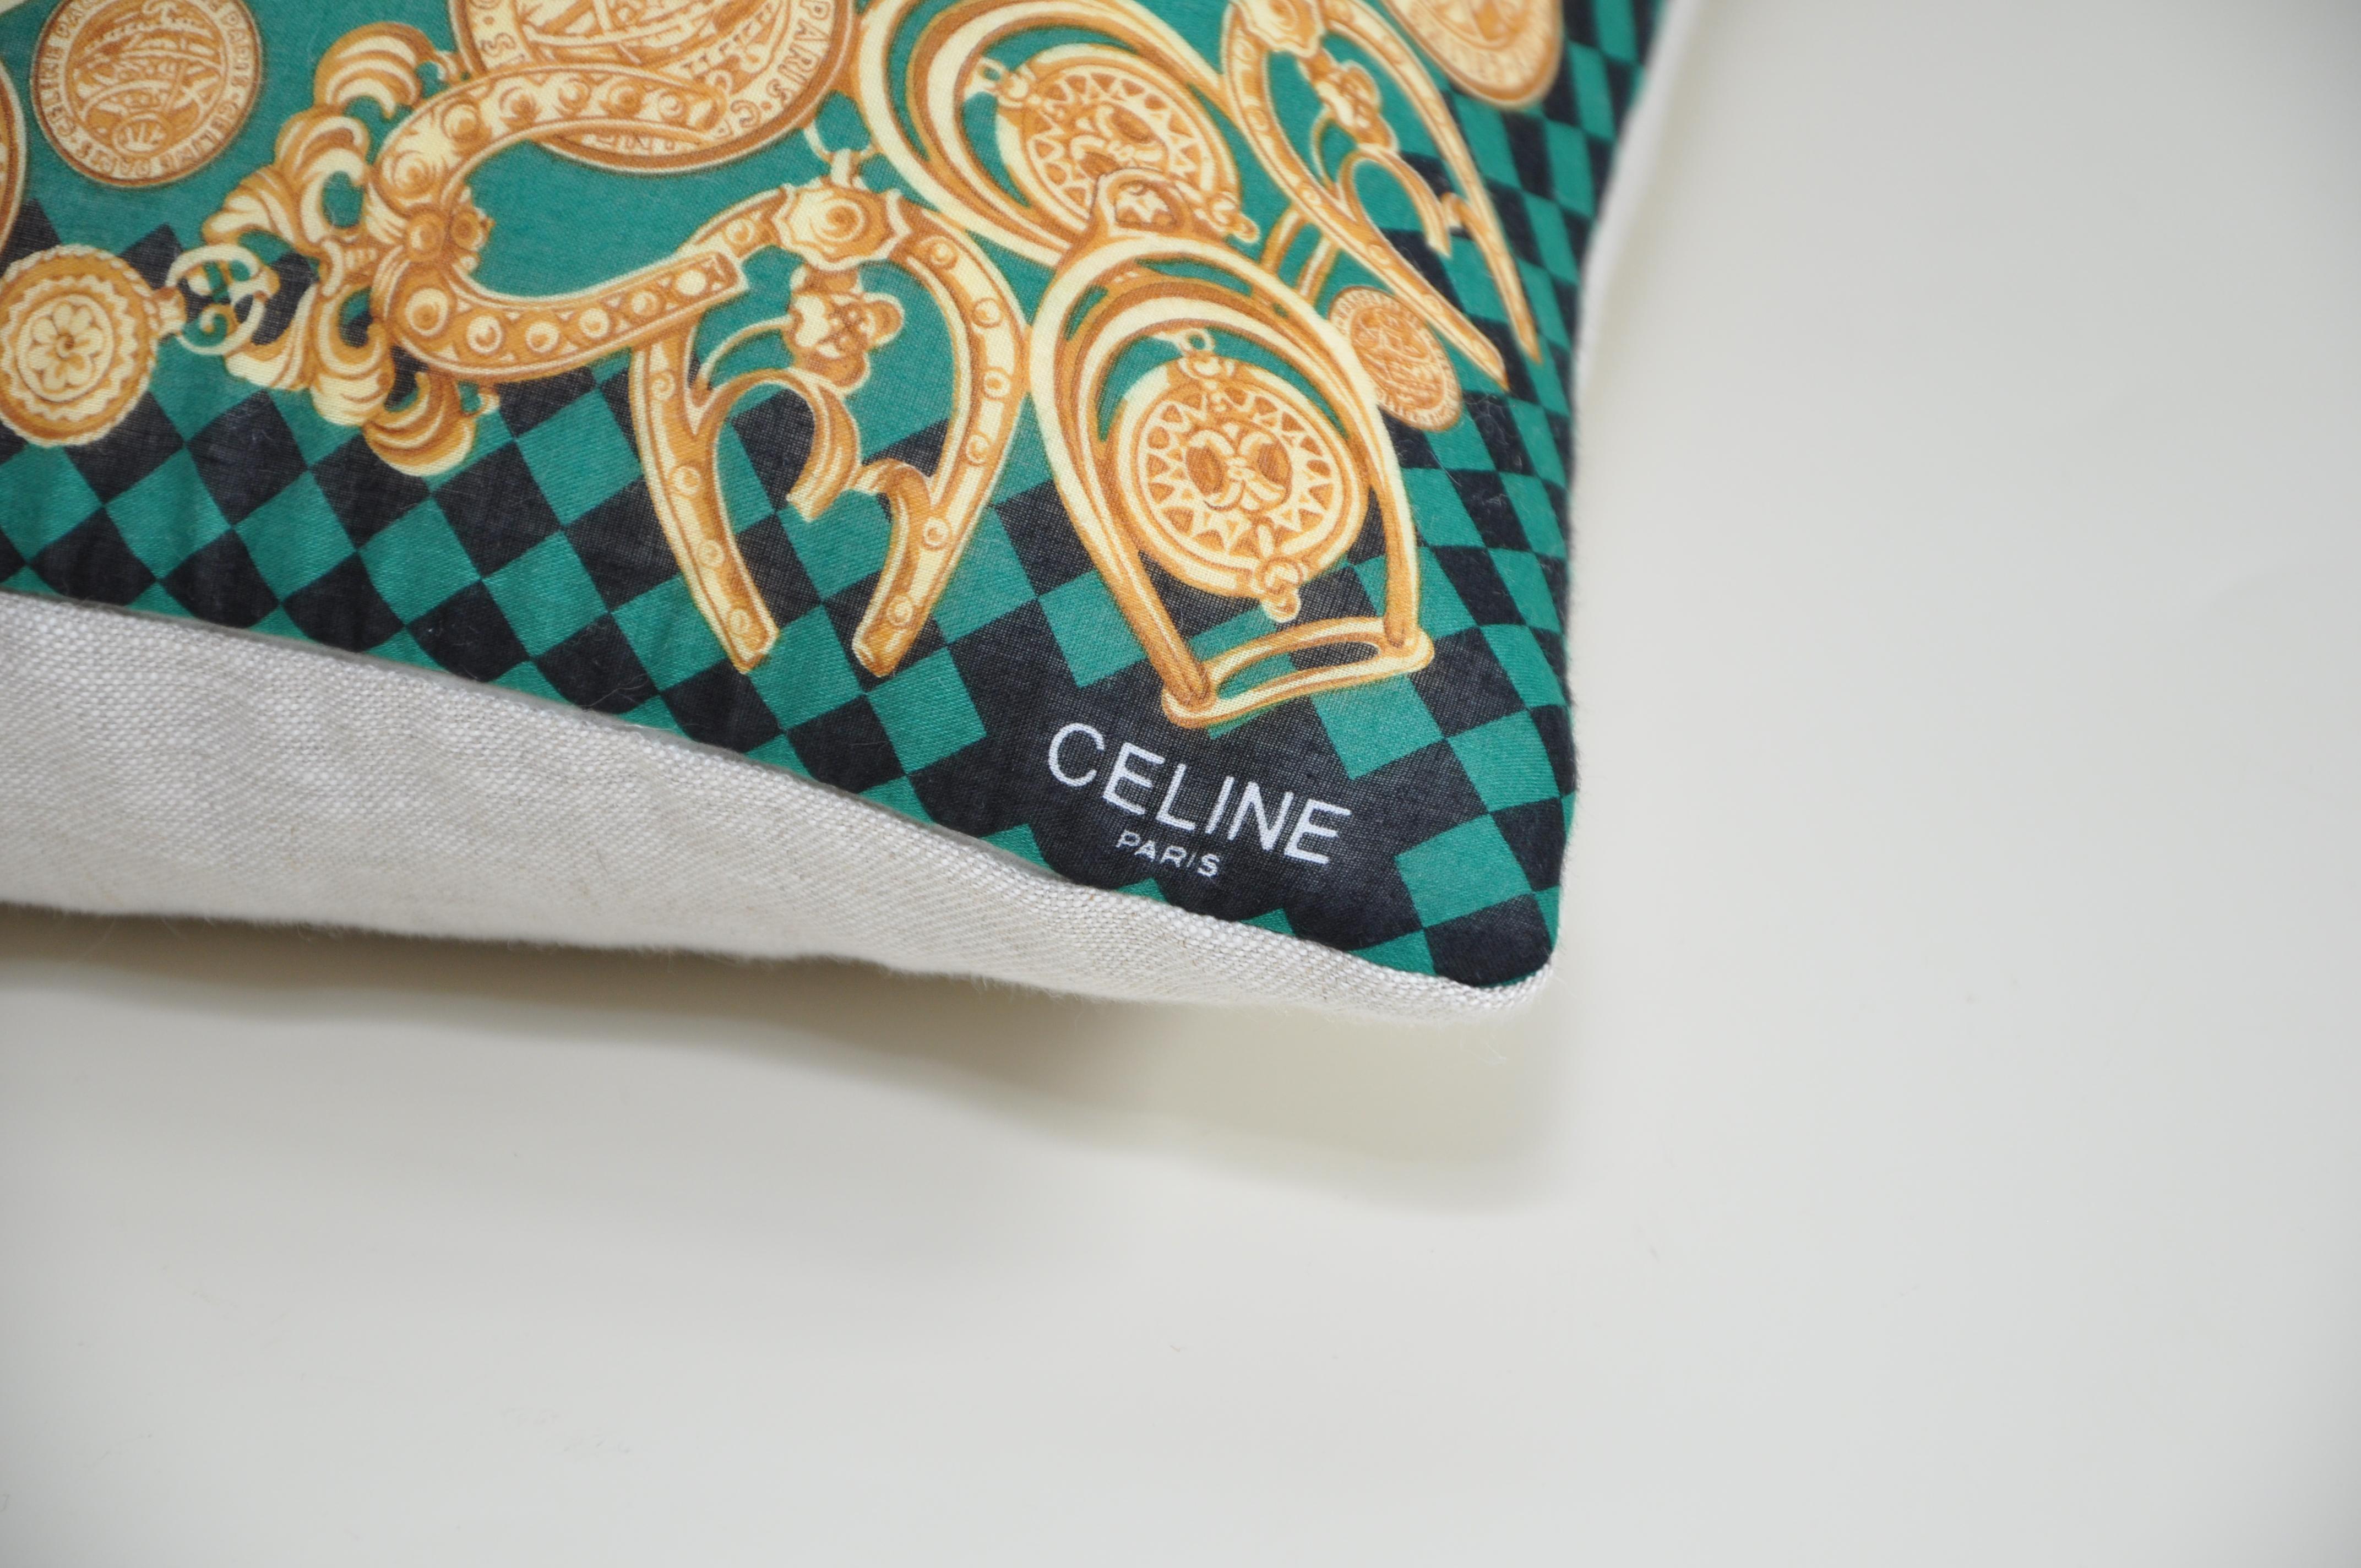 Titre :
Katie Larmour foulard vintage Céline doublé en pur lin irlandais coussin oreiller vert doré

Description :
Ce bijou est un coussin de luxe unique en son genre, fabriqué sur mesure à partir d'un exquis foulard Celine vintage au motif